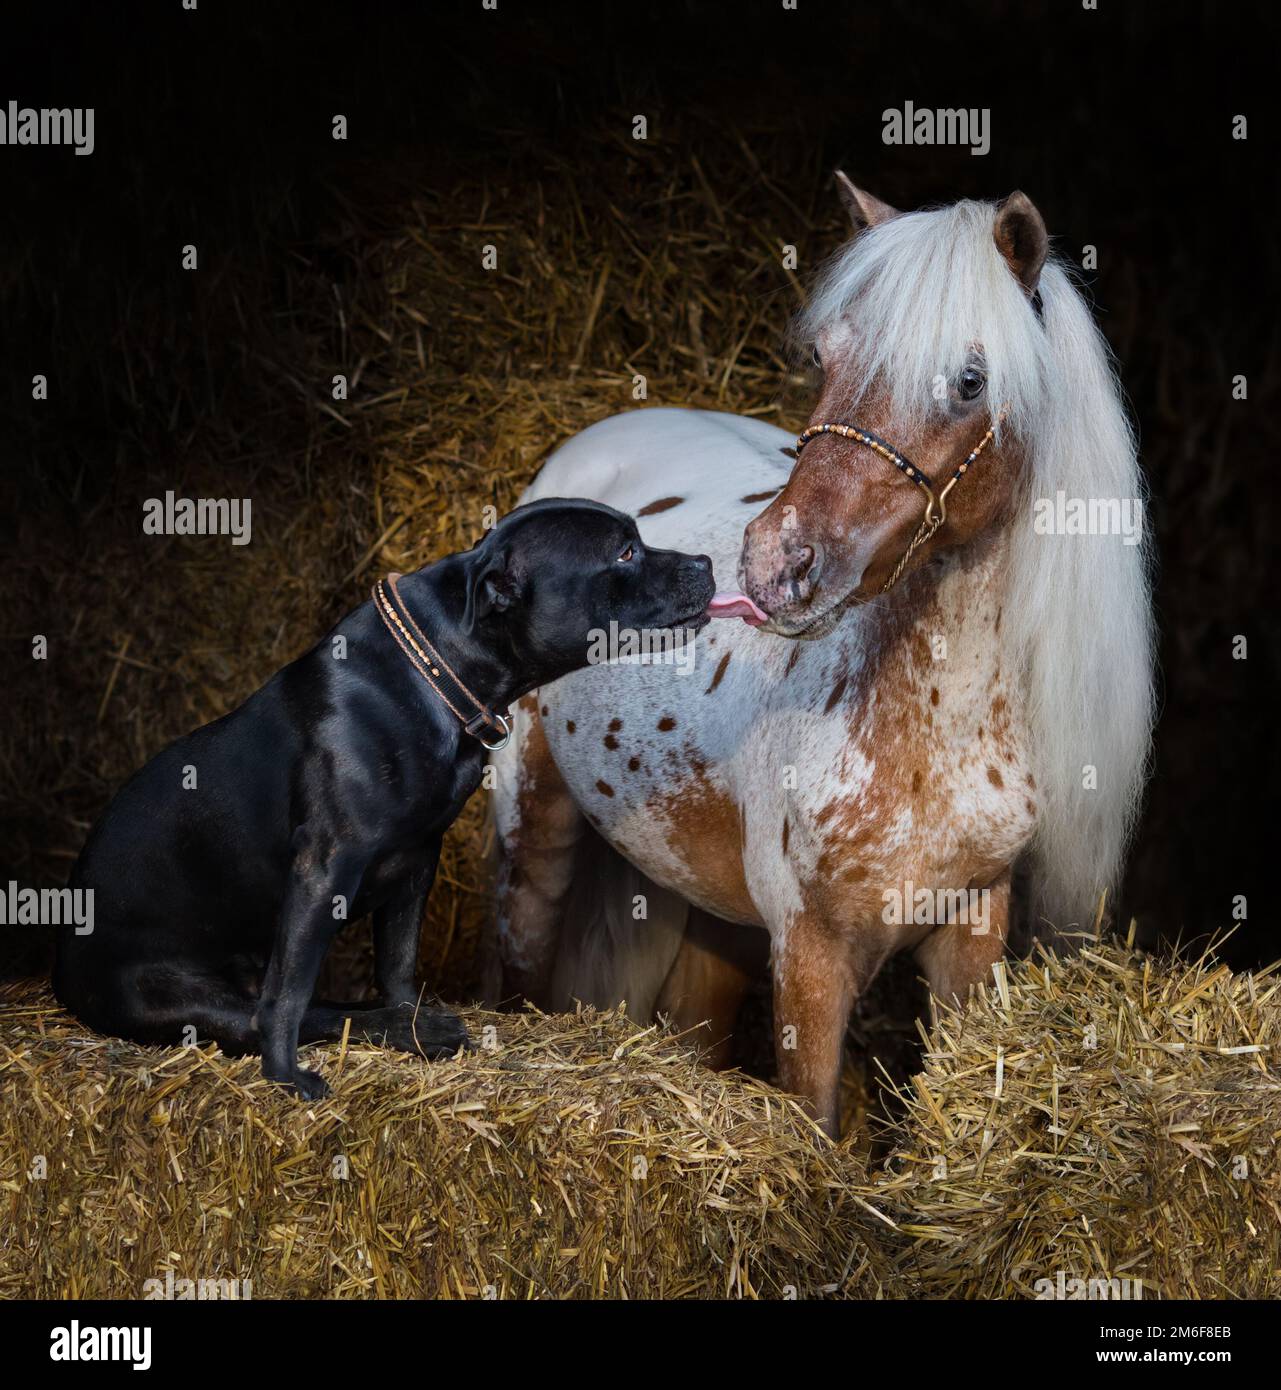 Staffordshire Bull Terrier cane e appaloosa americano in miniatura cavallo su paglia in stalla. Concetto di comunicazione di animali diversi. Foto Stock